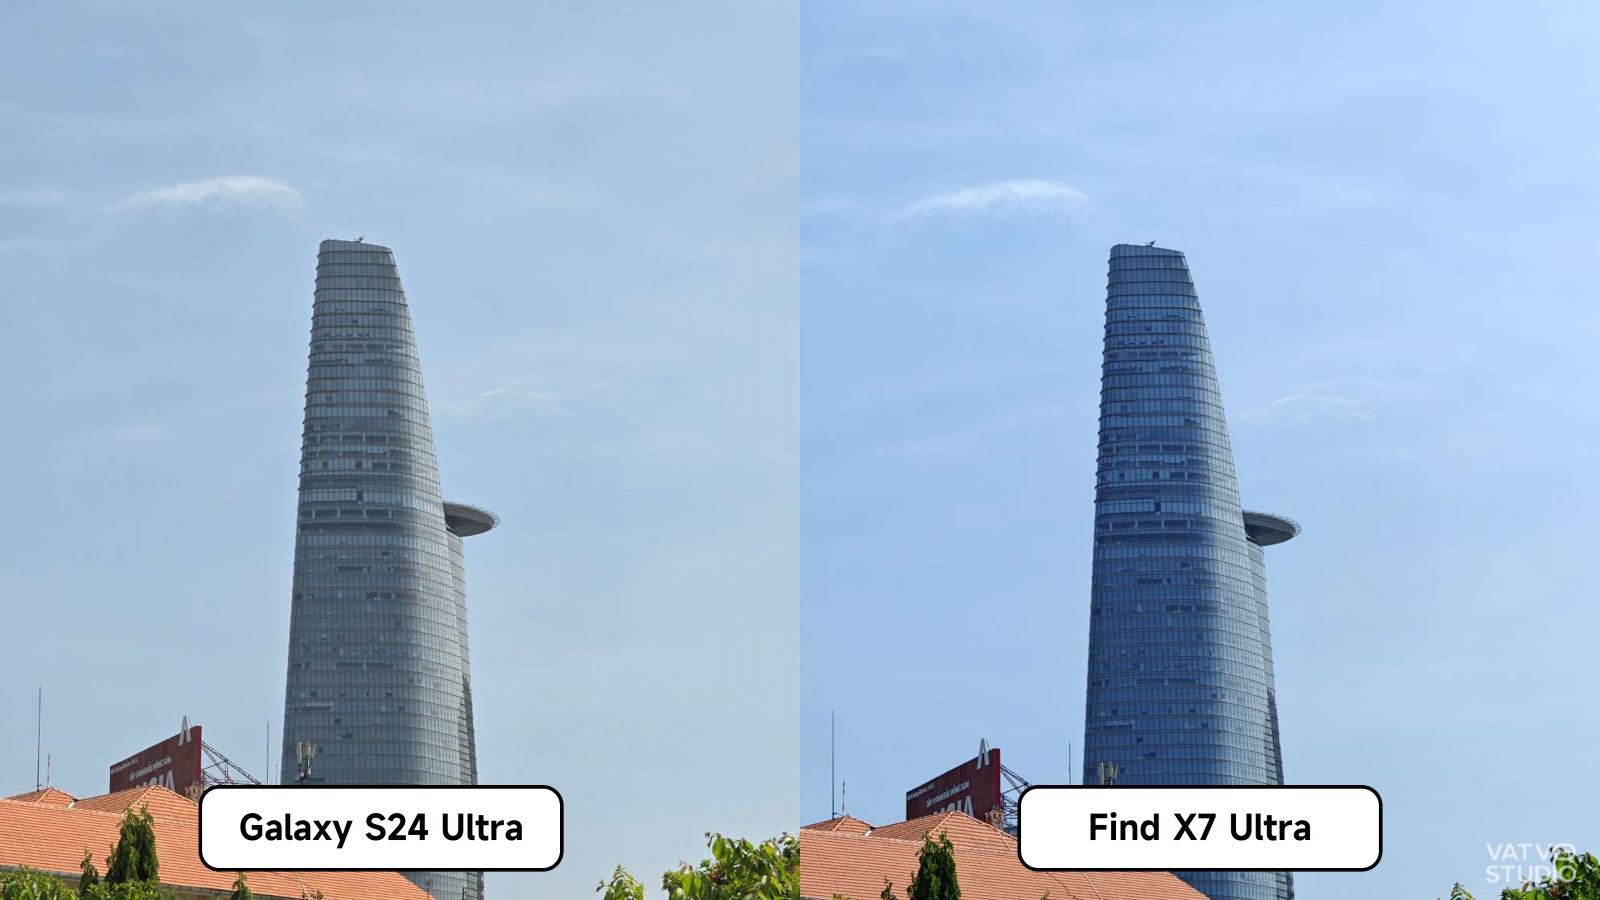 Bình chọn ảnh chụp từ Samsung Galaxy S24 Ultra và OPPO Find X7 Ultra